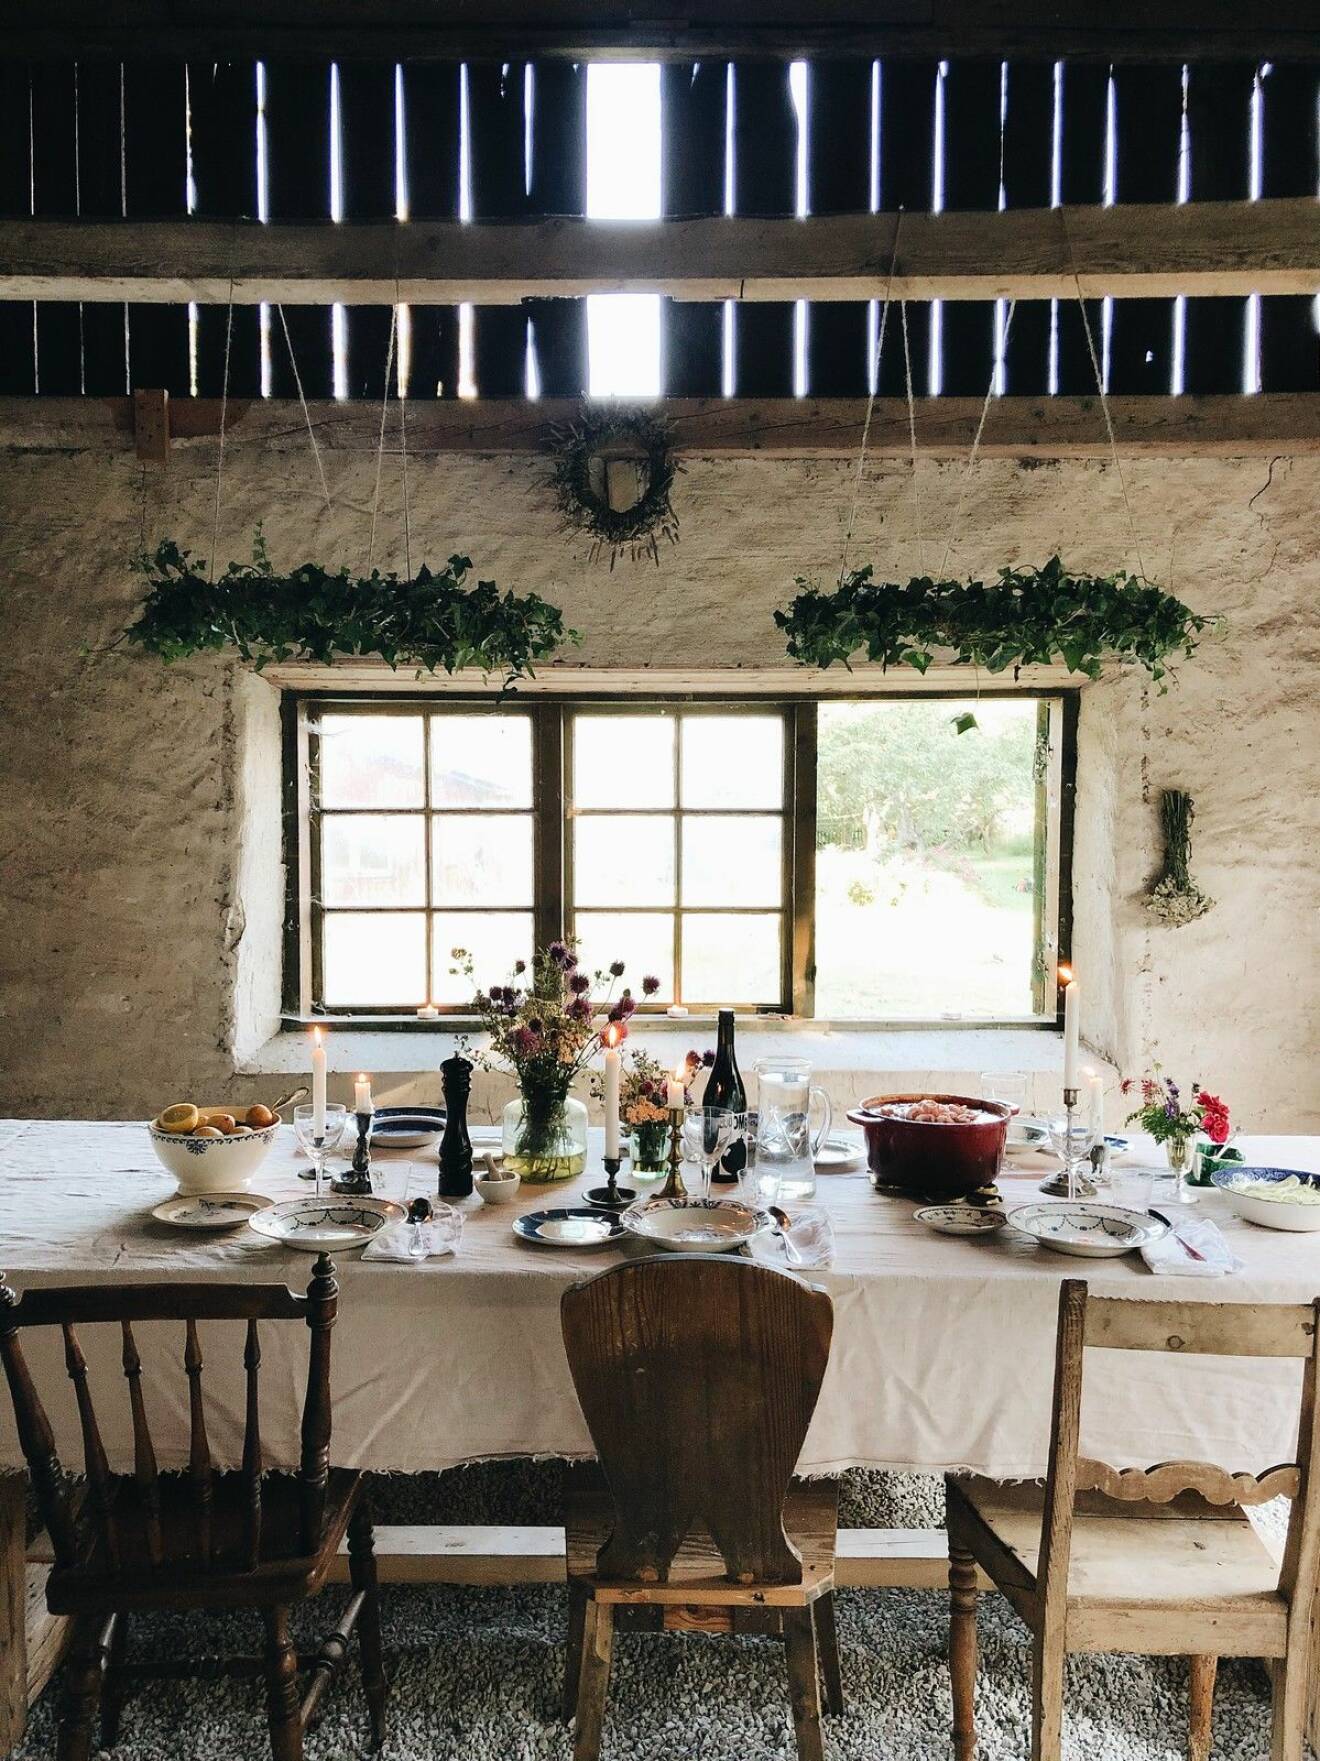 Duka långbordet med linneduk, nyplockade blommor och sommarkvällens middag. Vi hämtar inspiration från ELLEs bloggare Elsa Billgren som är en mästare på att få till drömlik känsla i hennes Gotlandslada.